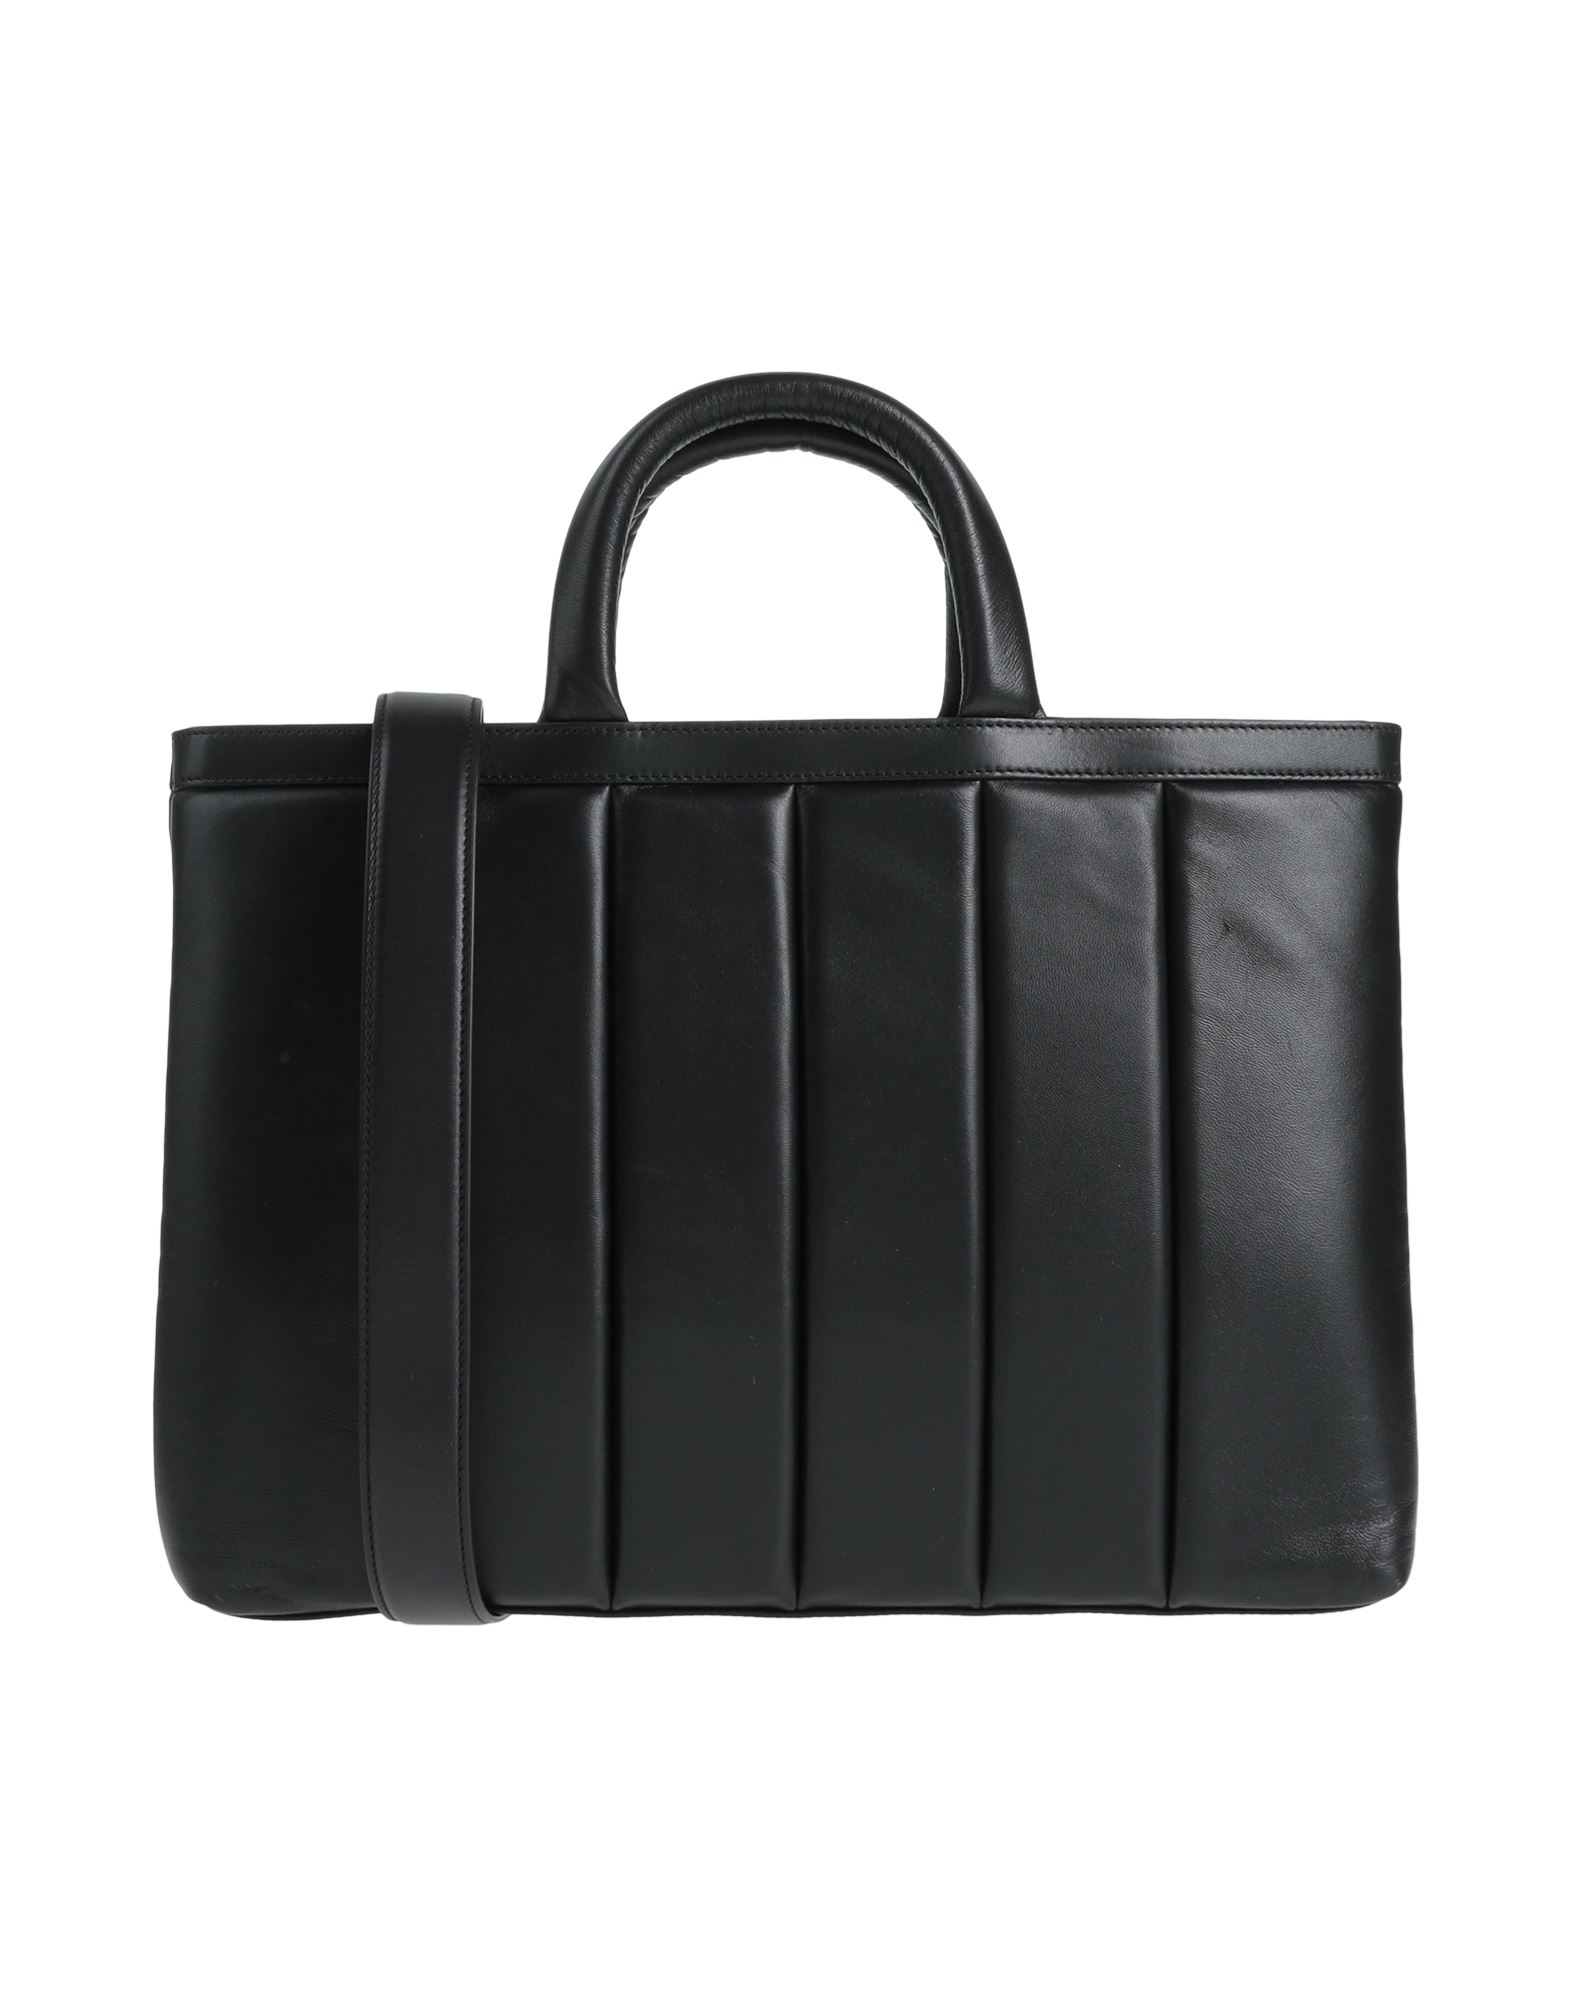 Dunhill Handbags In Black